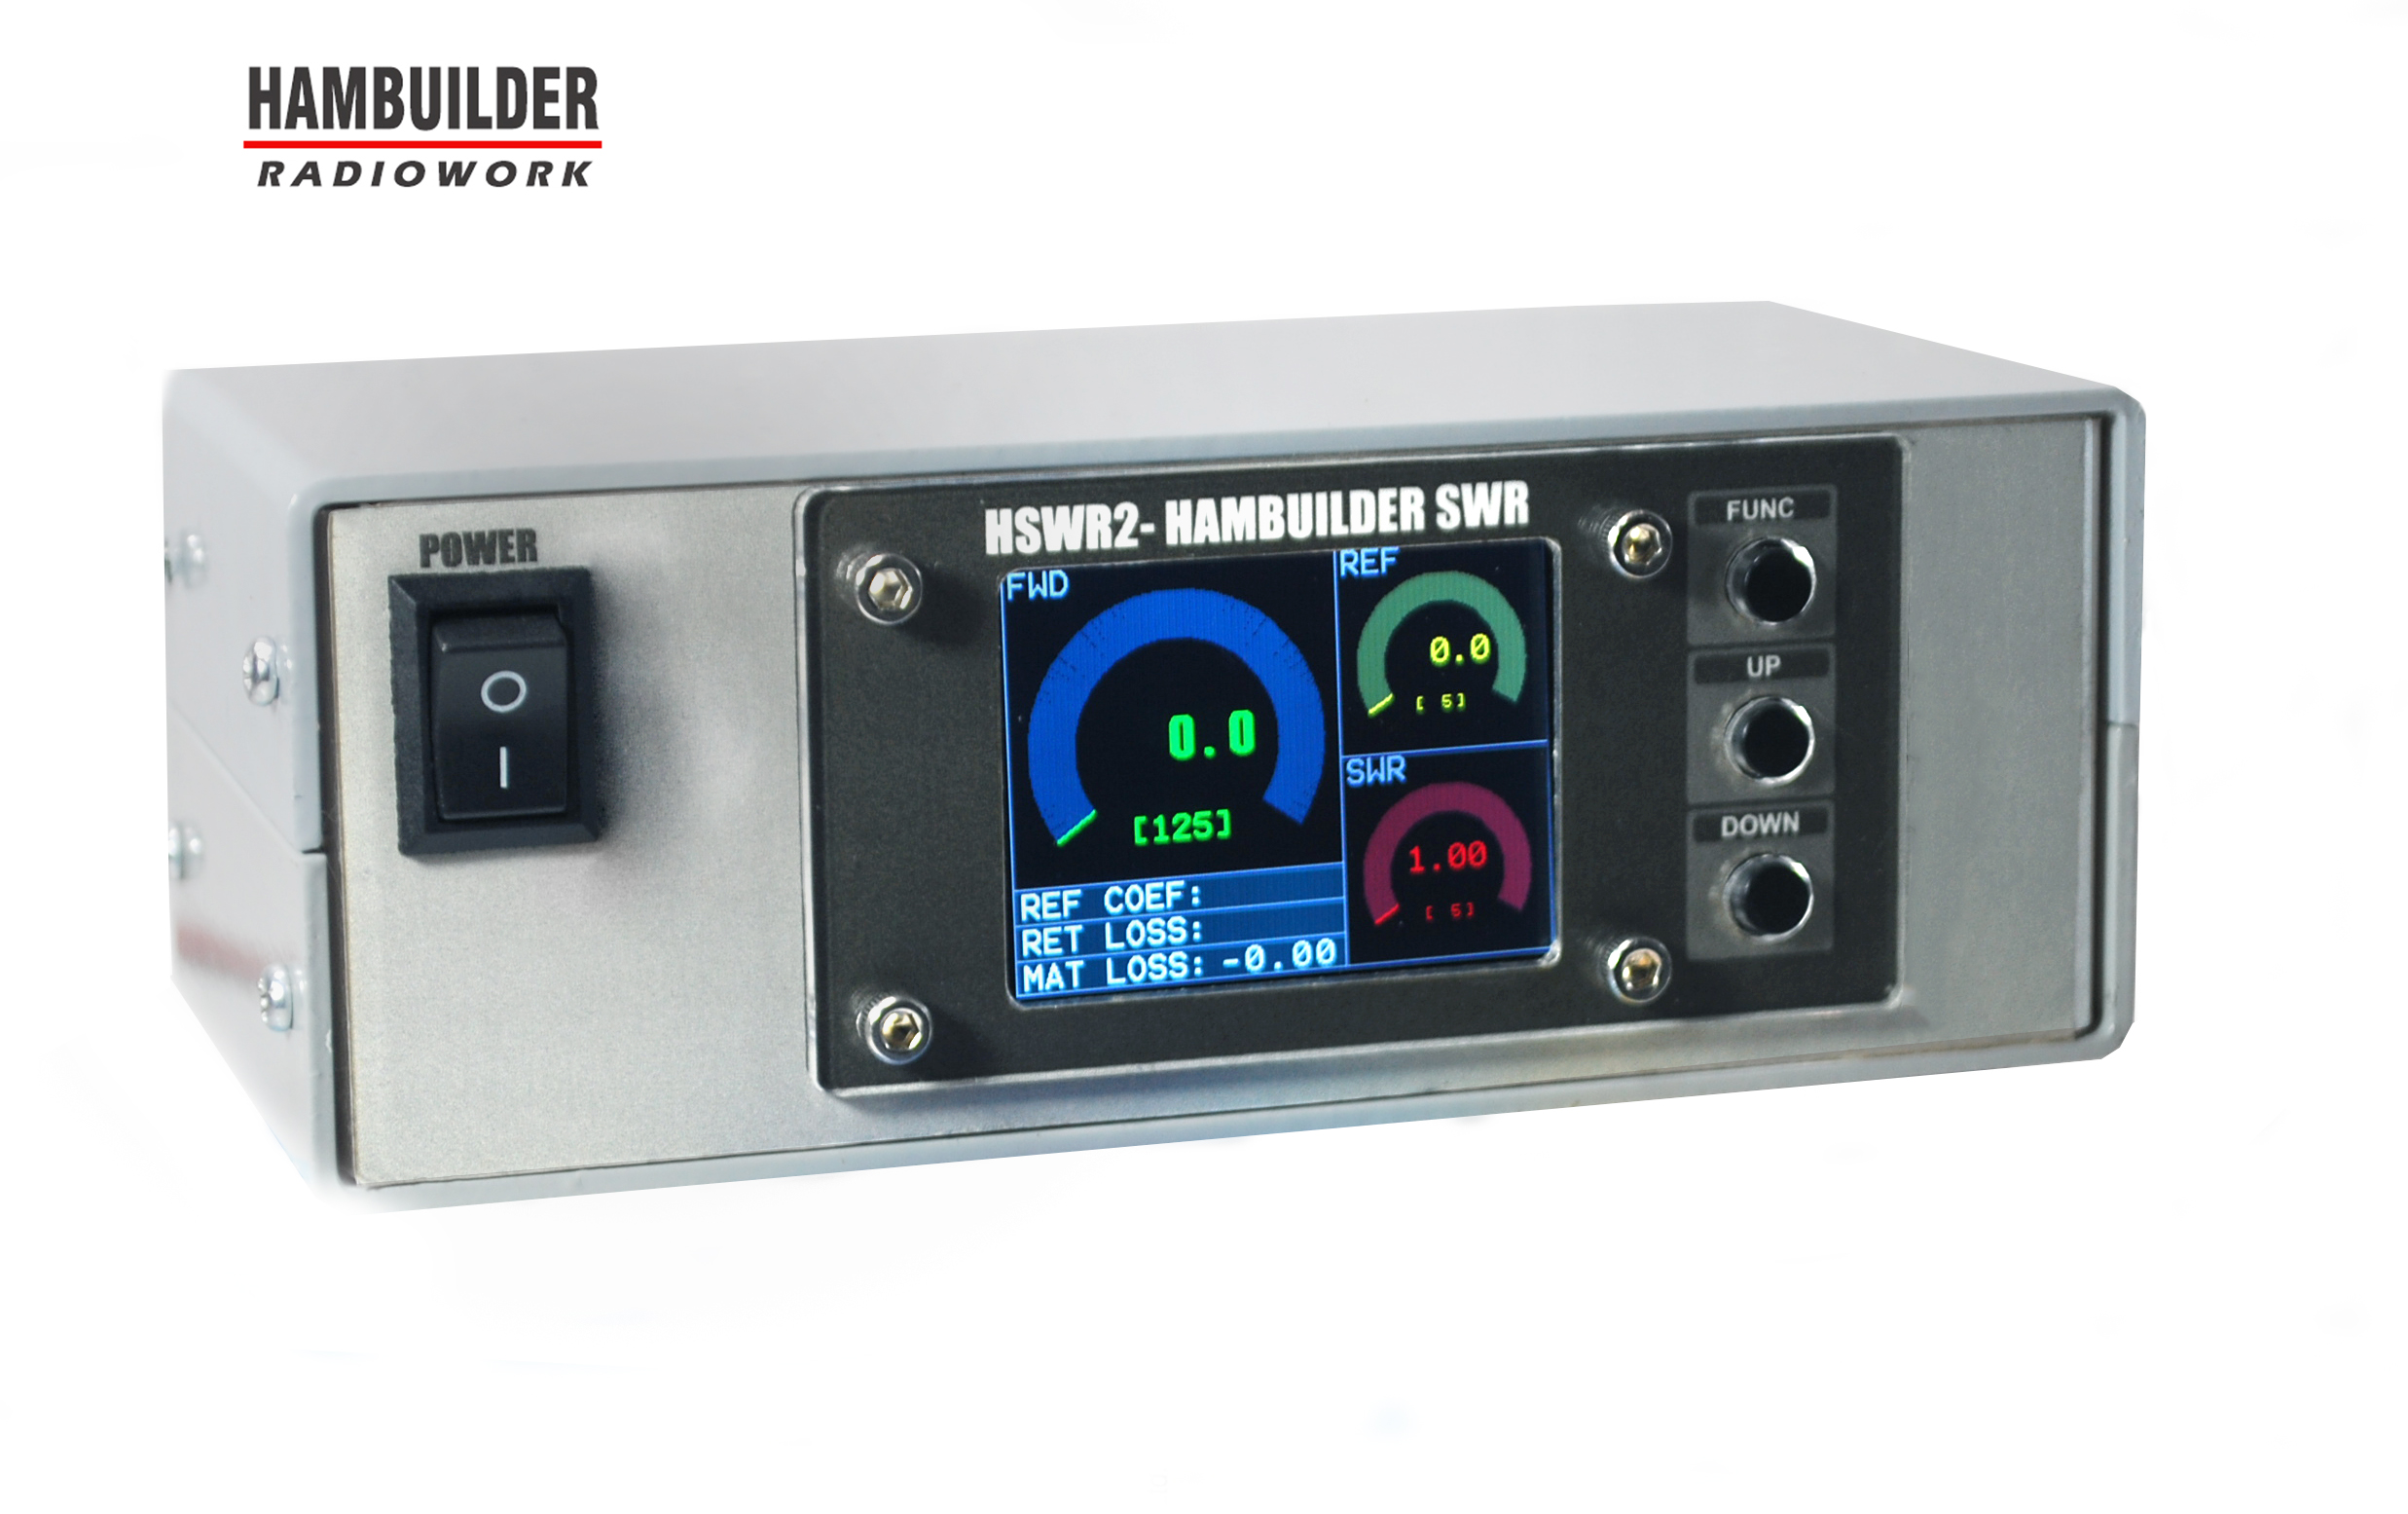 HSWR2 HAMBUILDER SWR V2.0